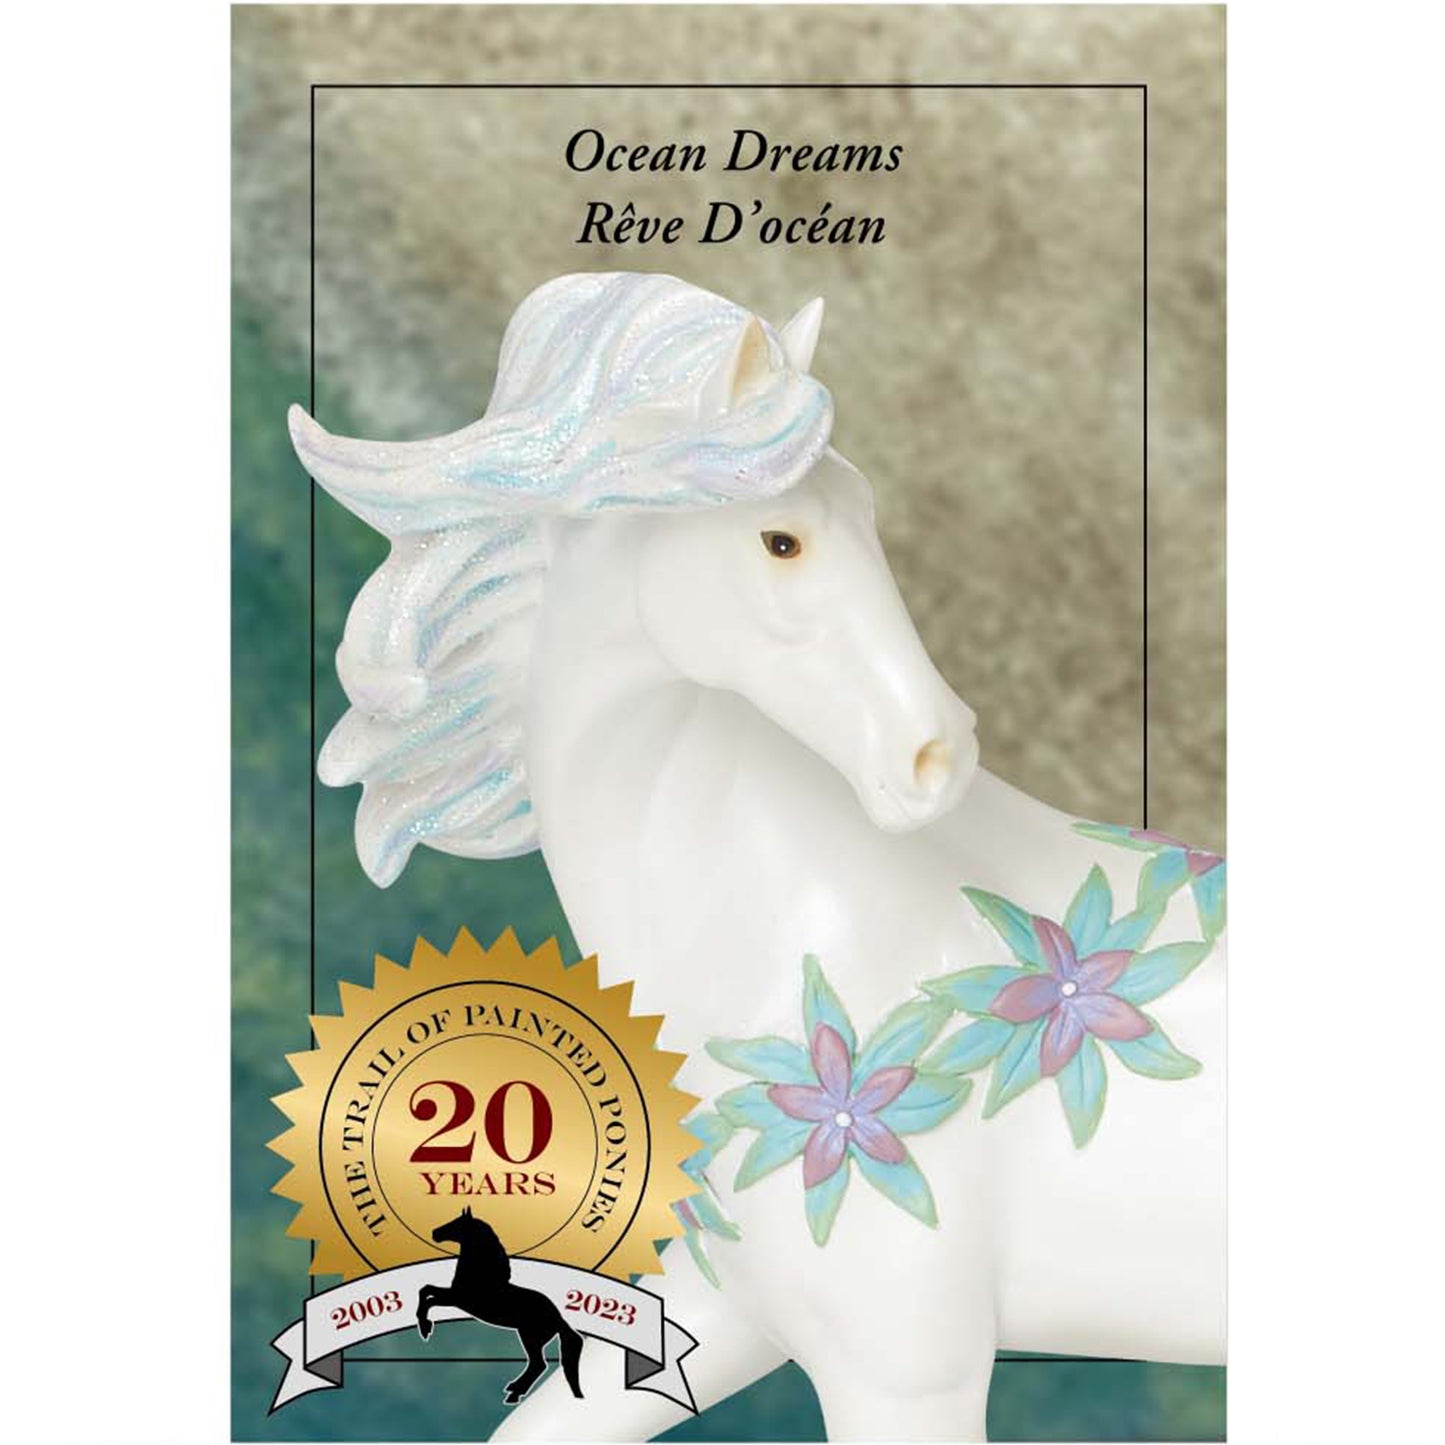 Ocean Dreams - Standard Edition